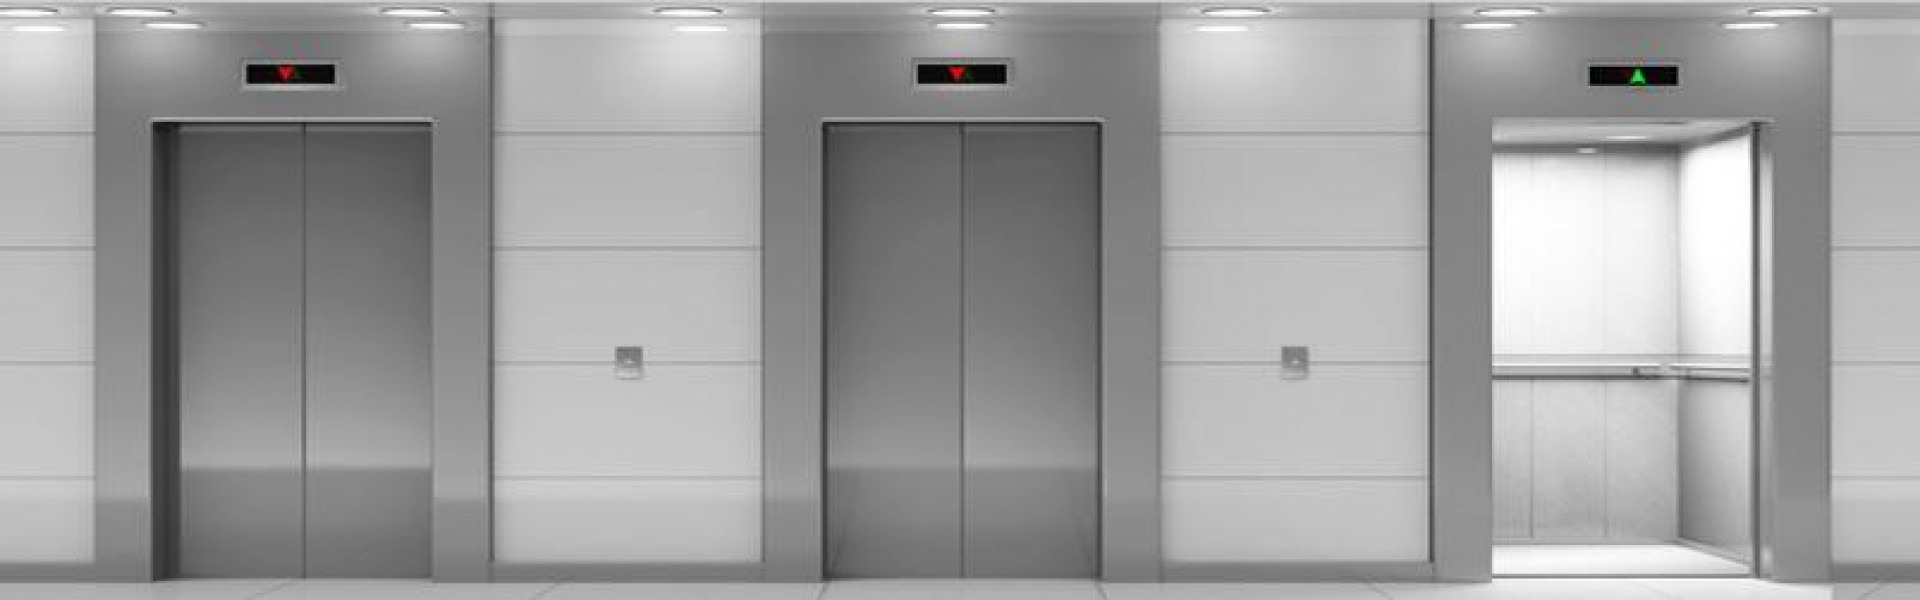 Vantagens da modernização de elevadores